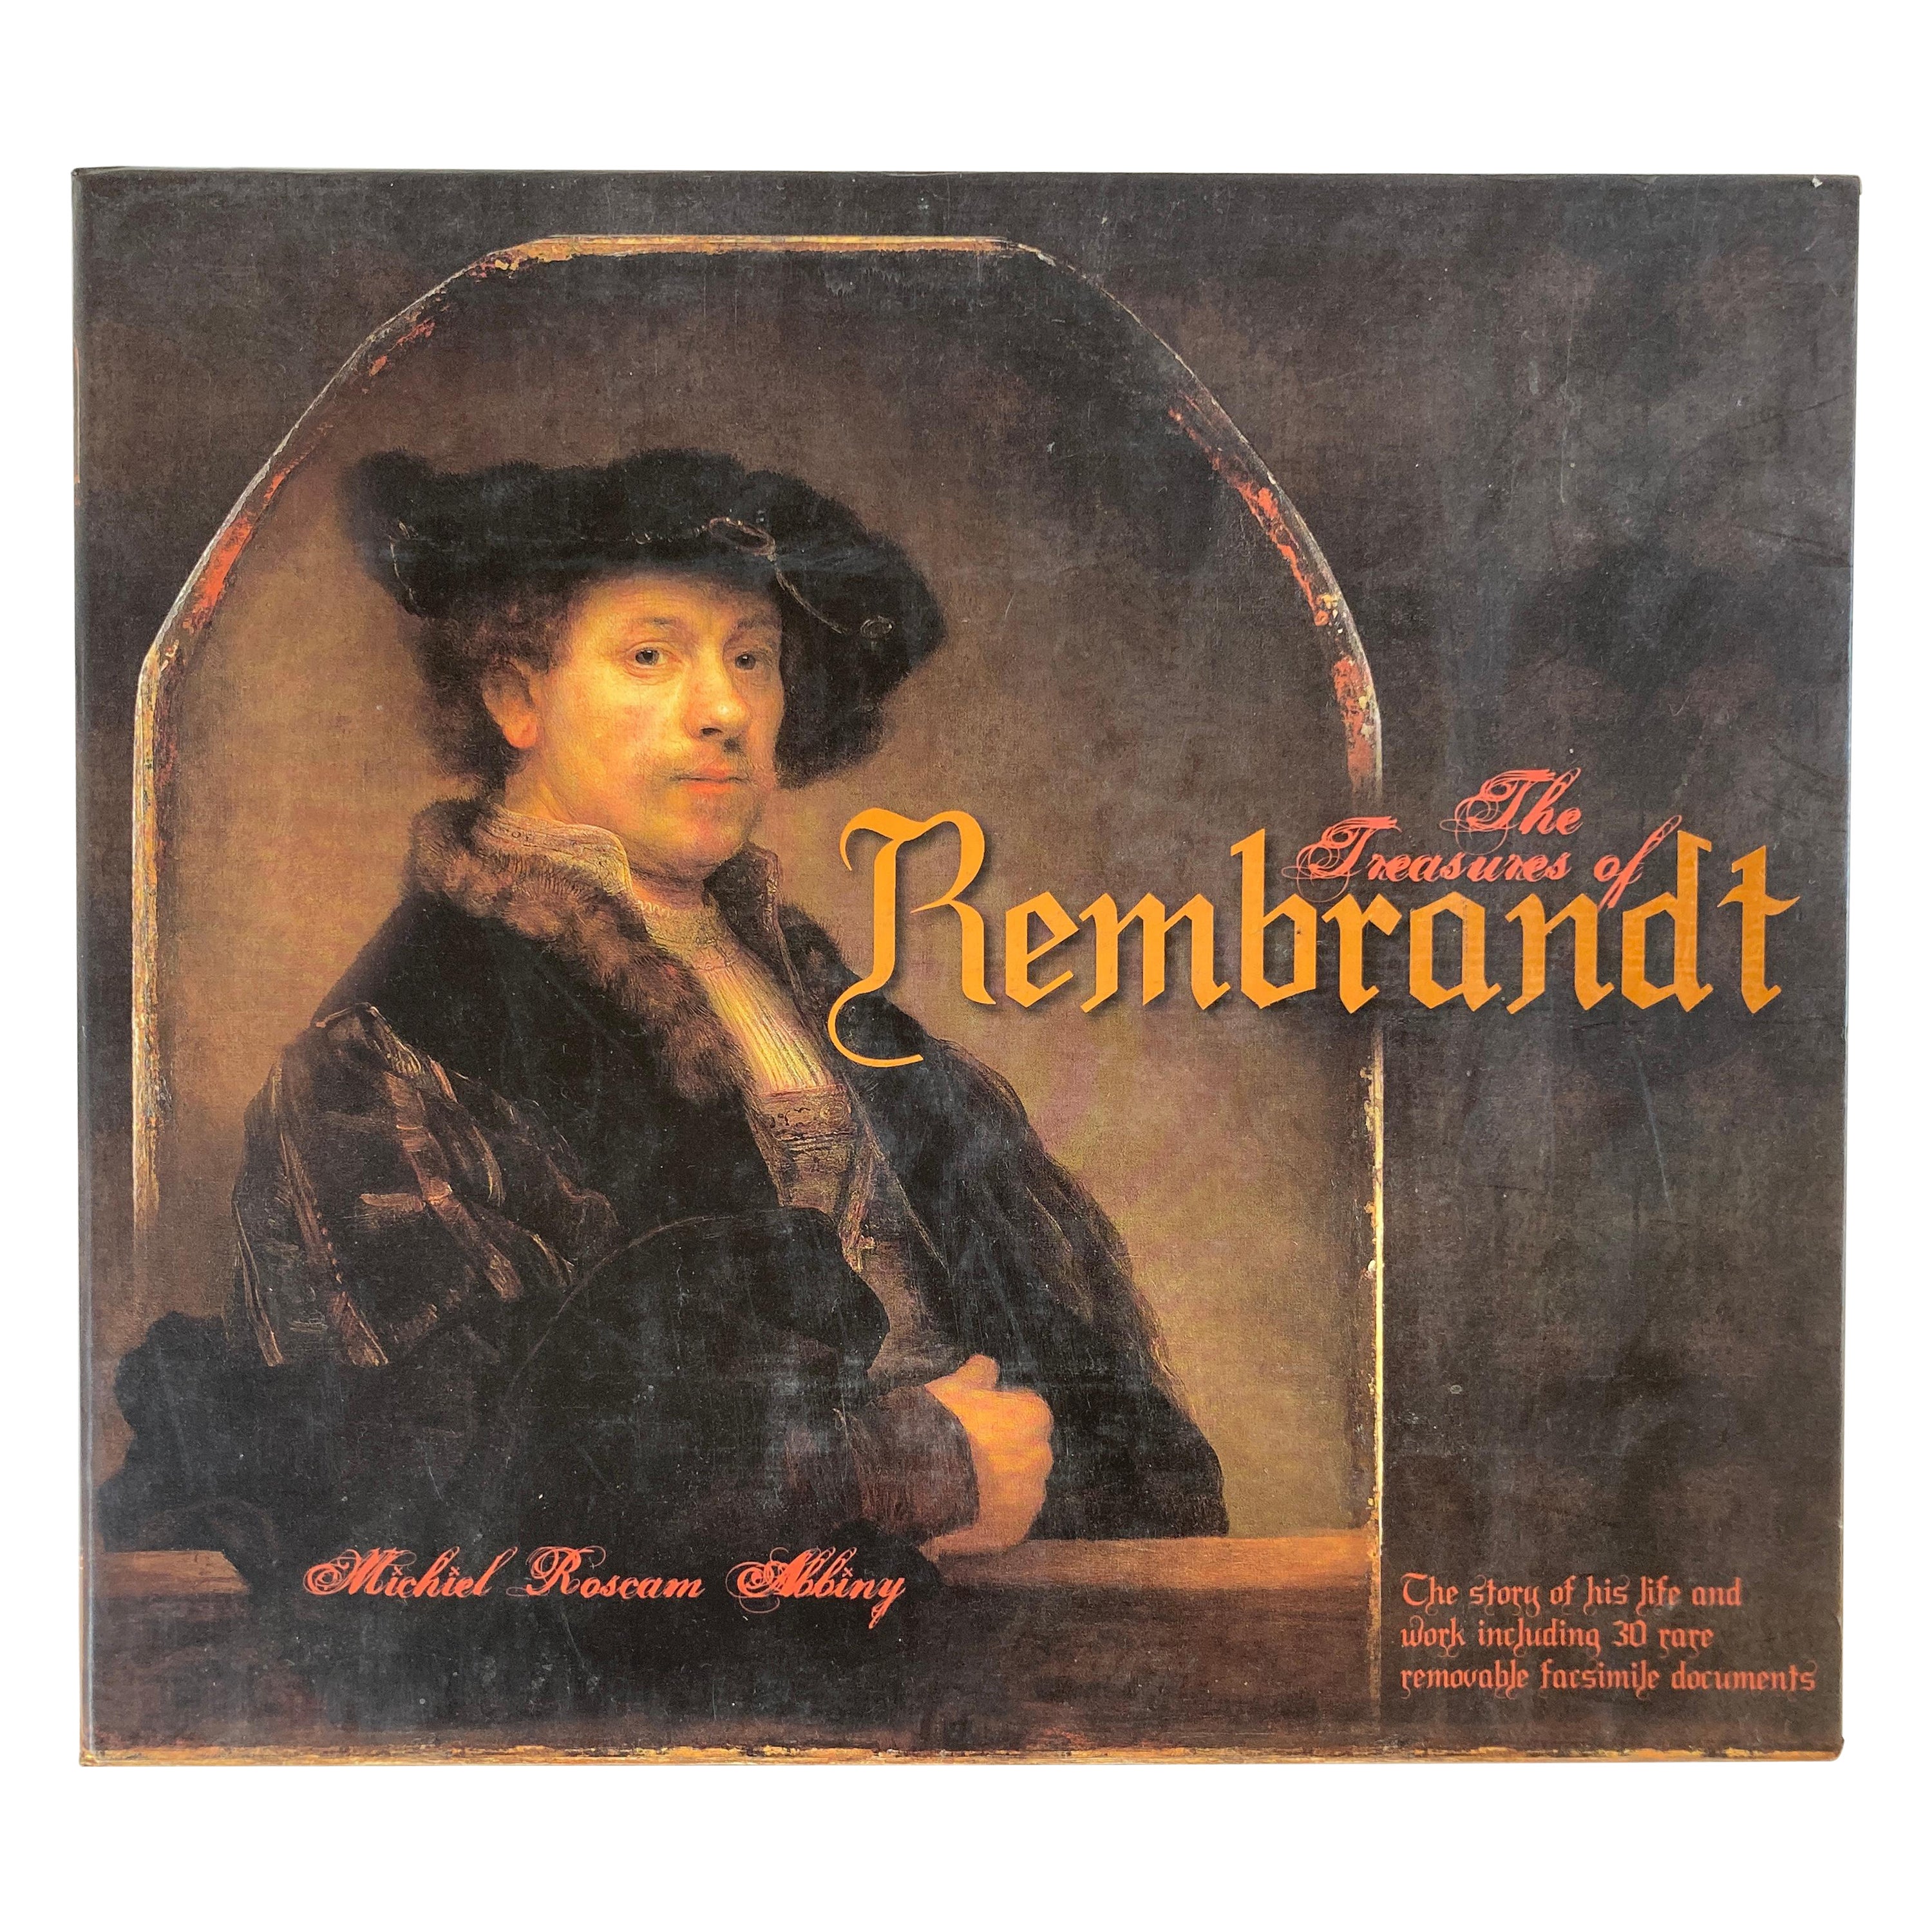 Livre The Treasures of Rembrandt (Les trésors de Rembrandt) par Michiel Roscam Abbing Art Gallery